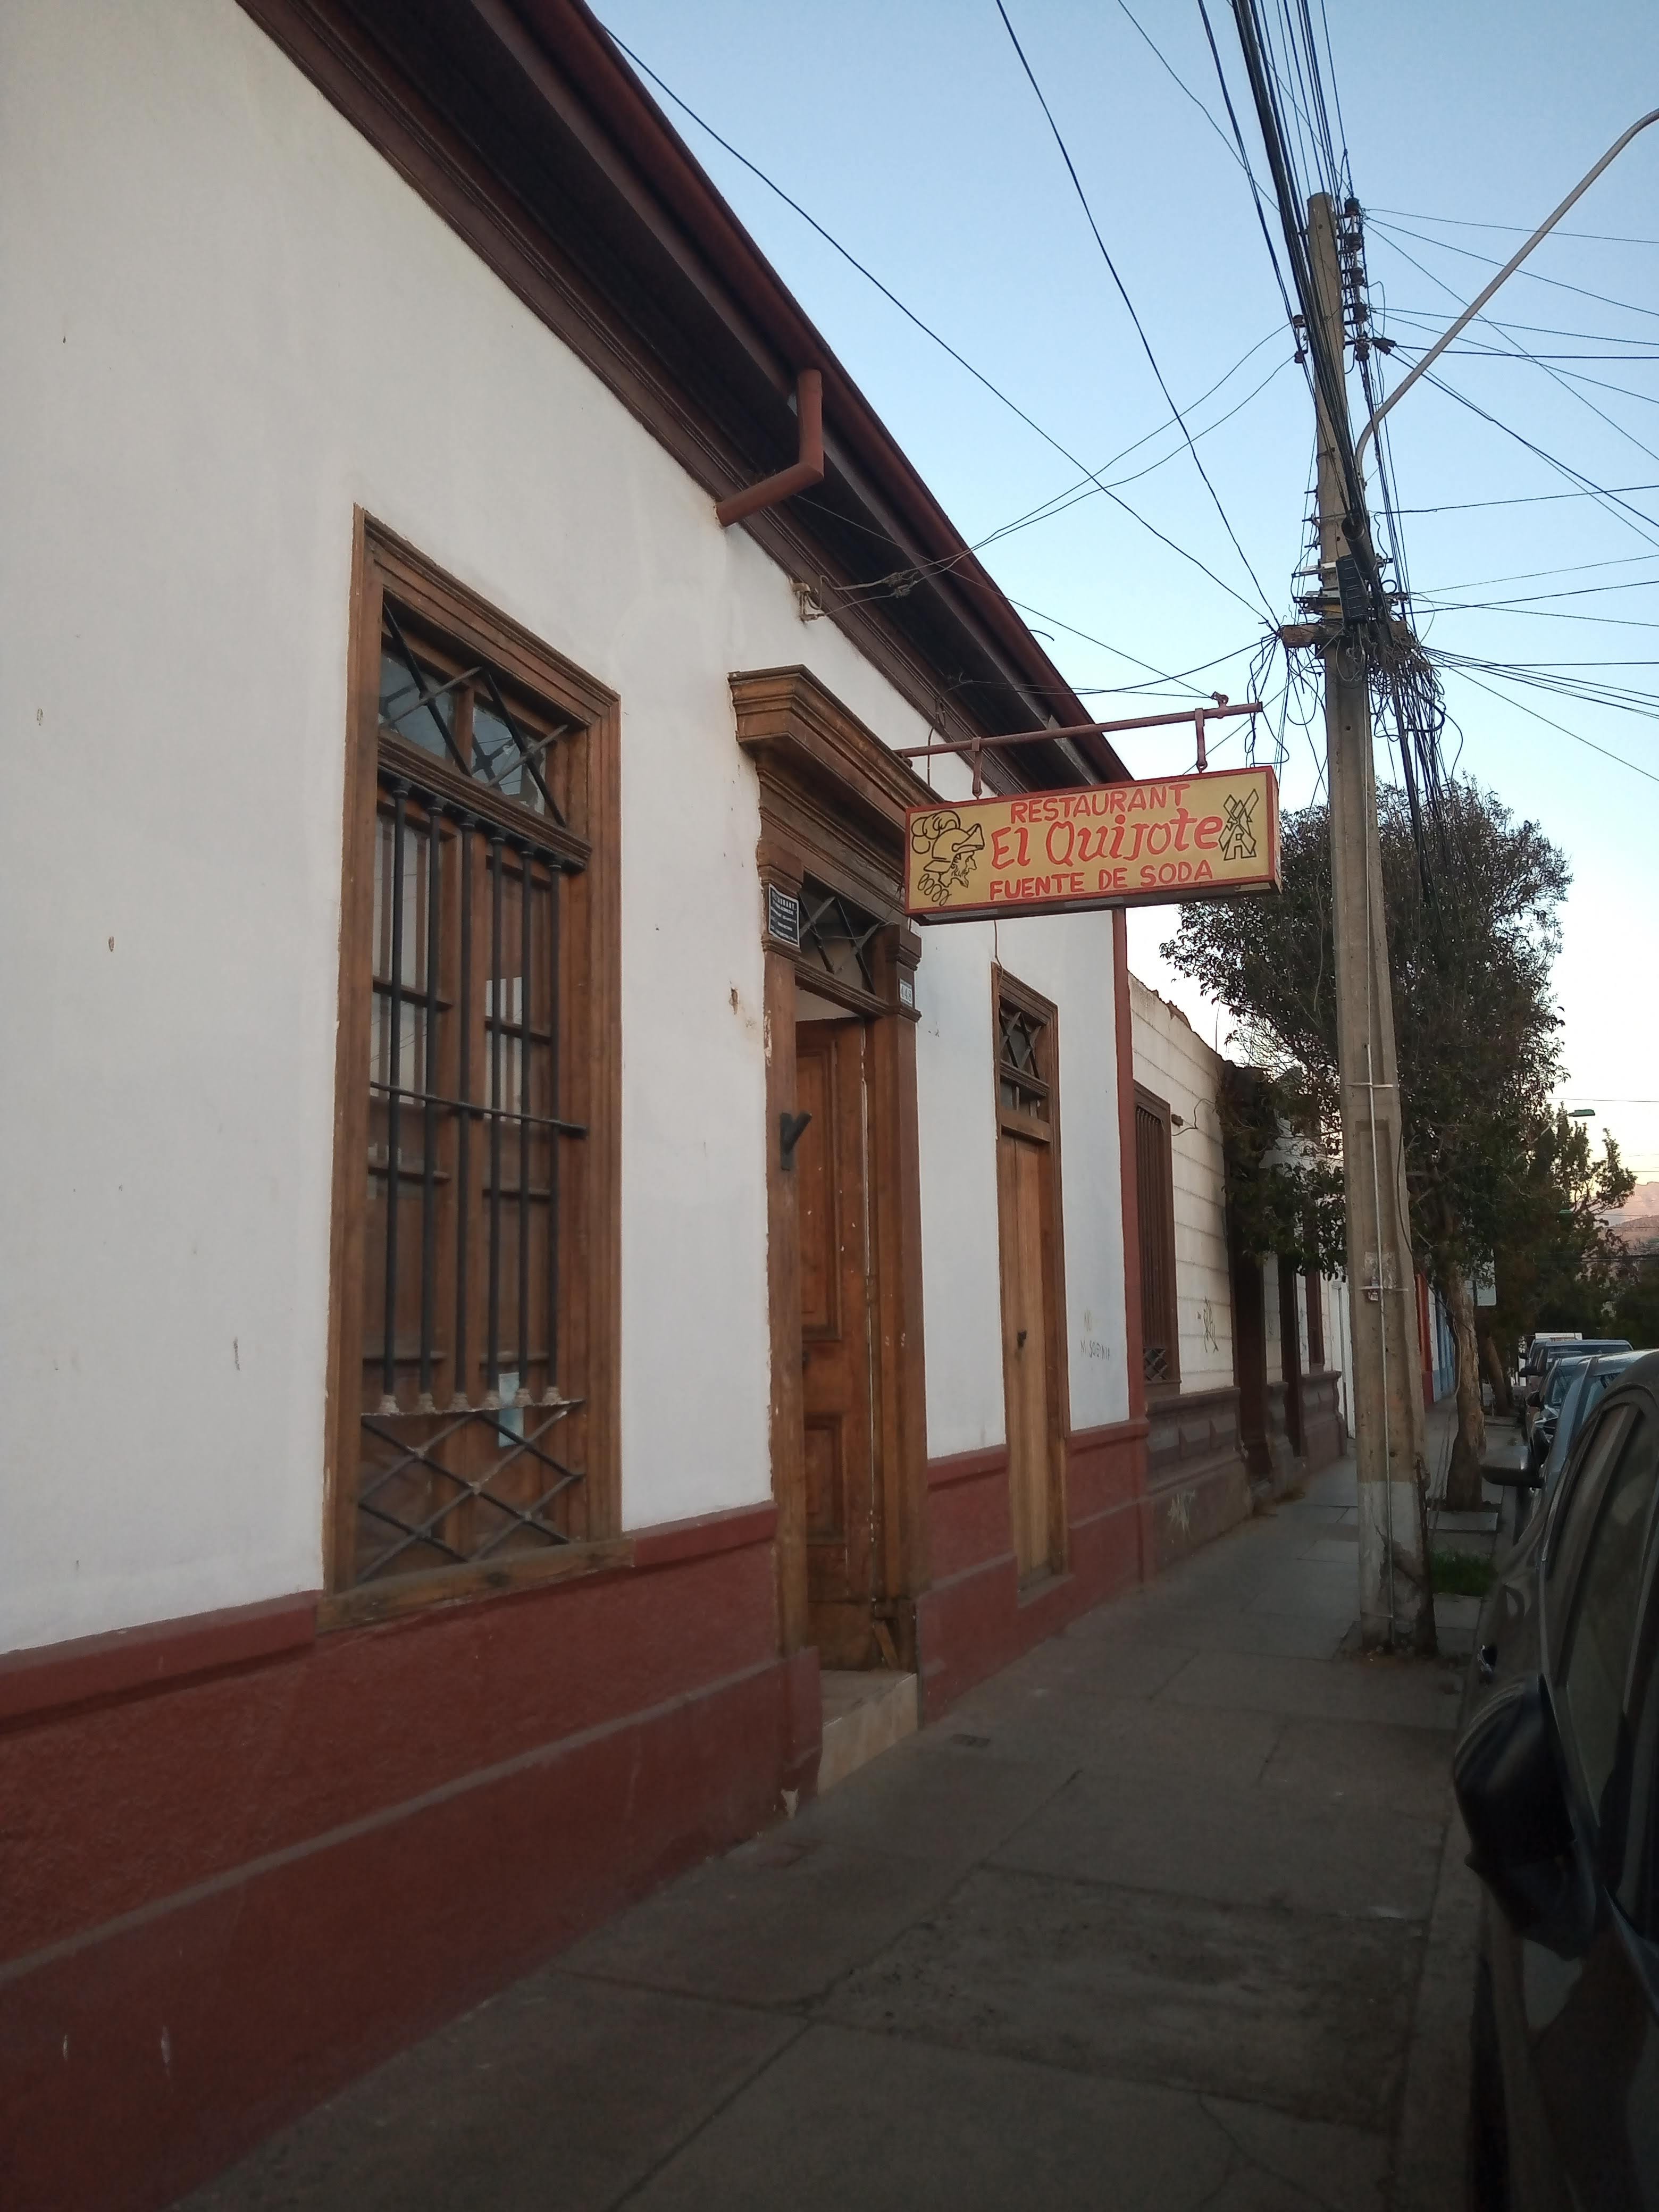 Restaurant El Quijote - Ovalle